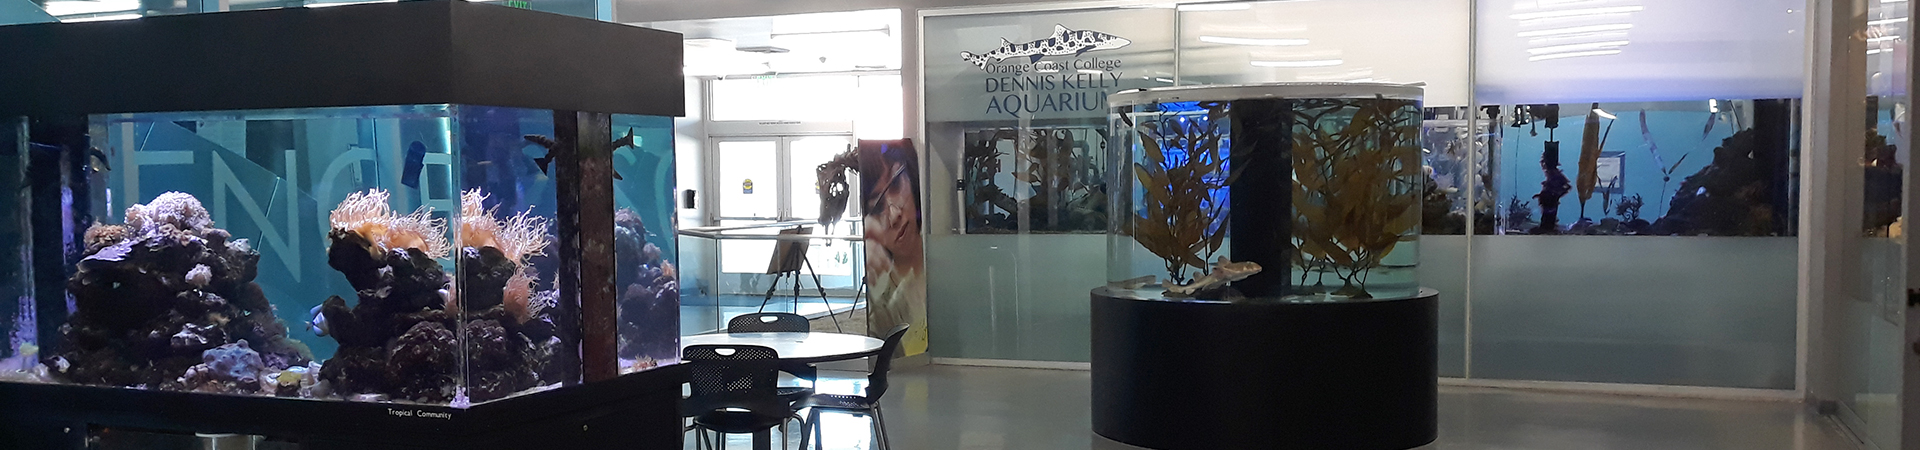 Lobby area of the OCC Aquarium